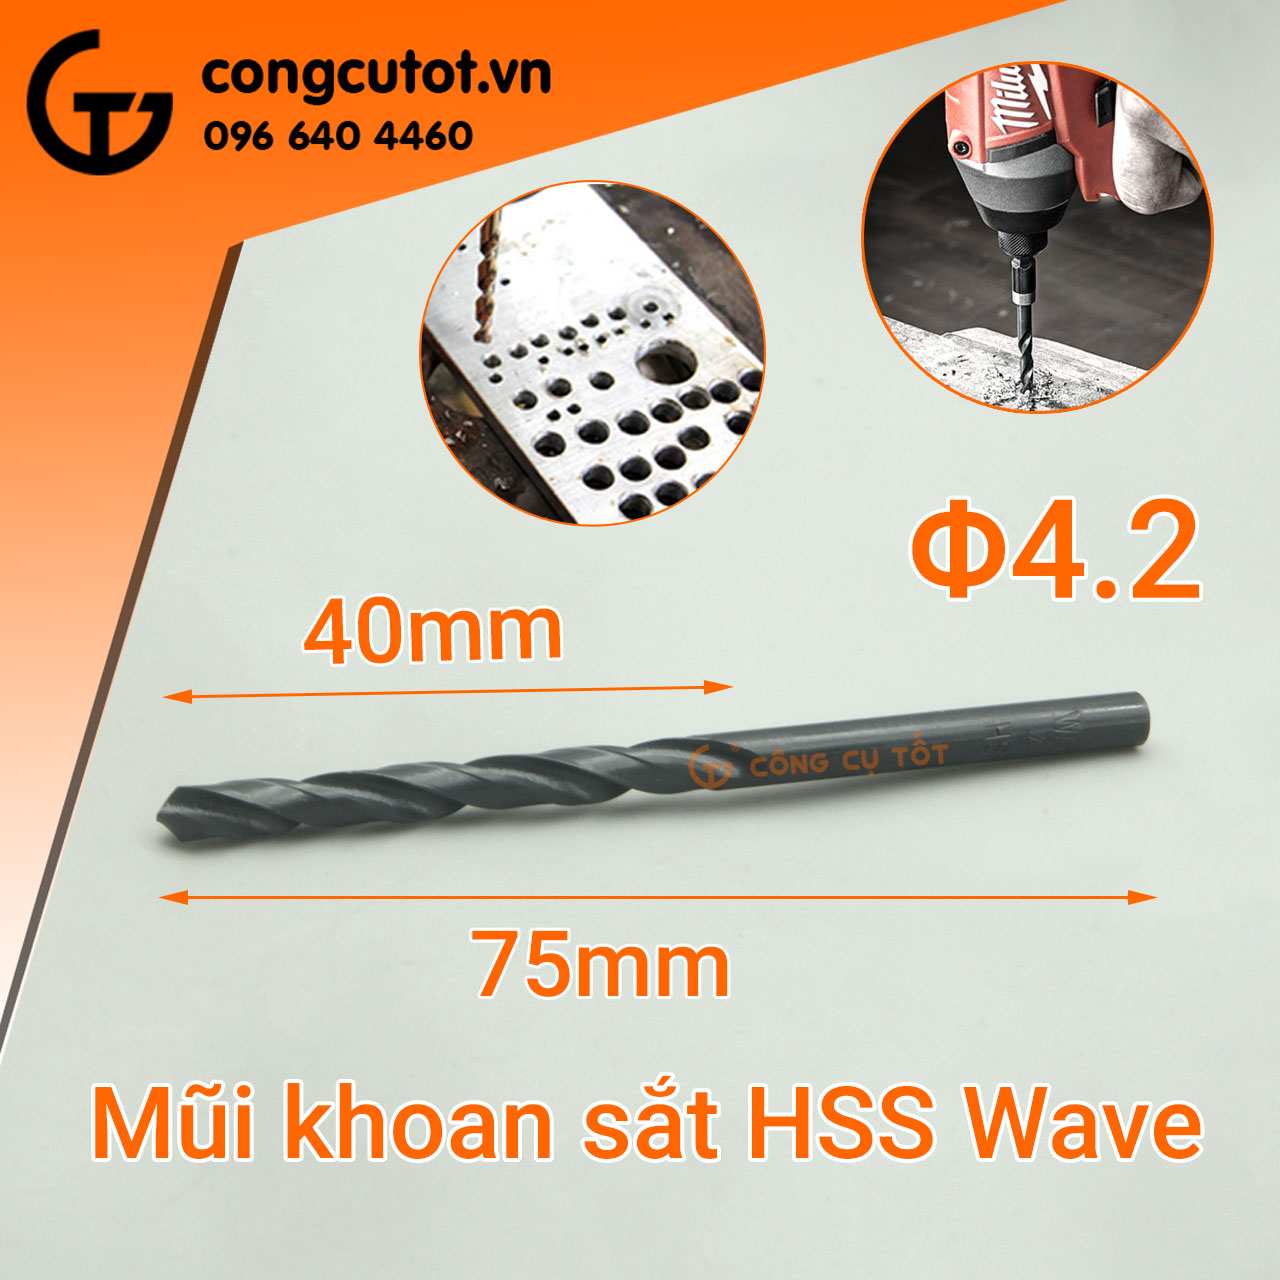 Mũi khoan sắt HSS Wave tạo lỗ khoan có đường kính 4.2mm